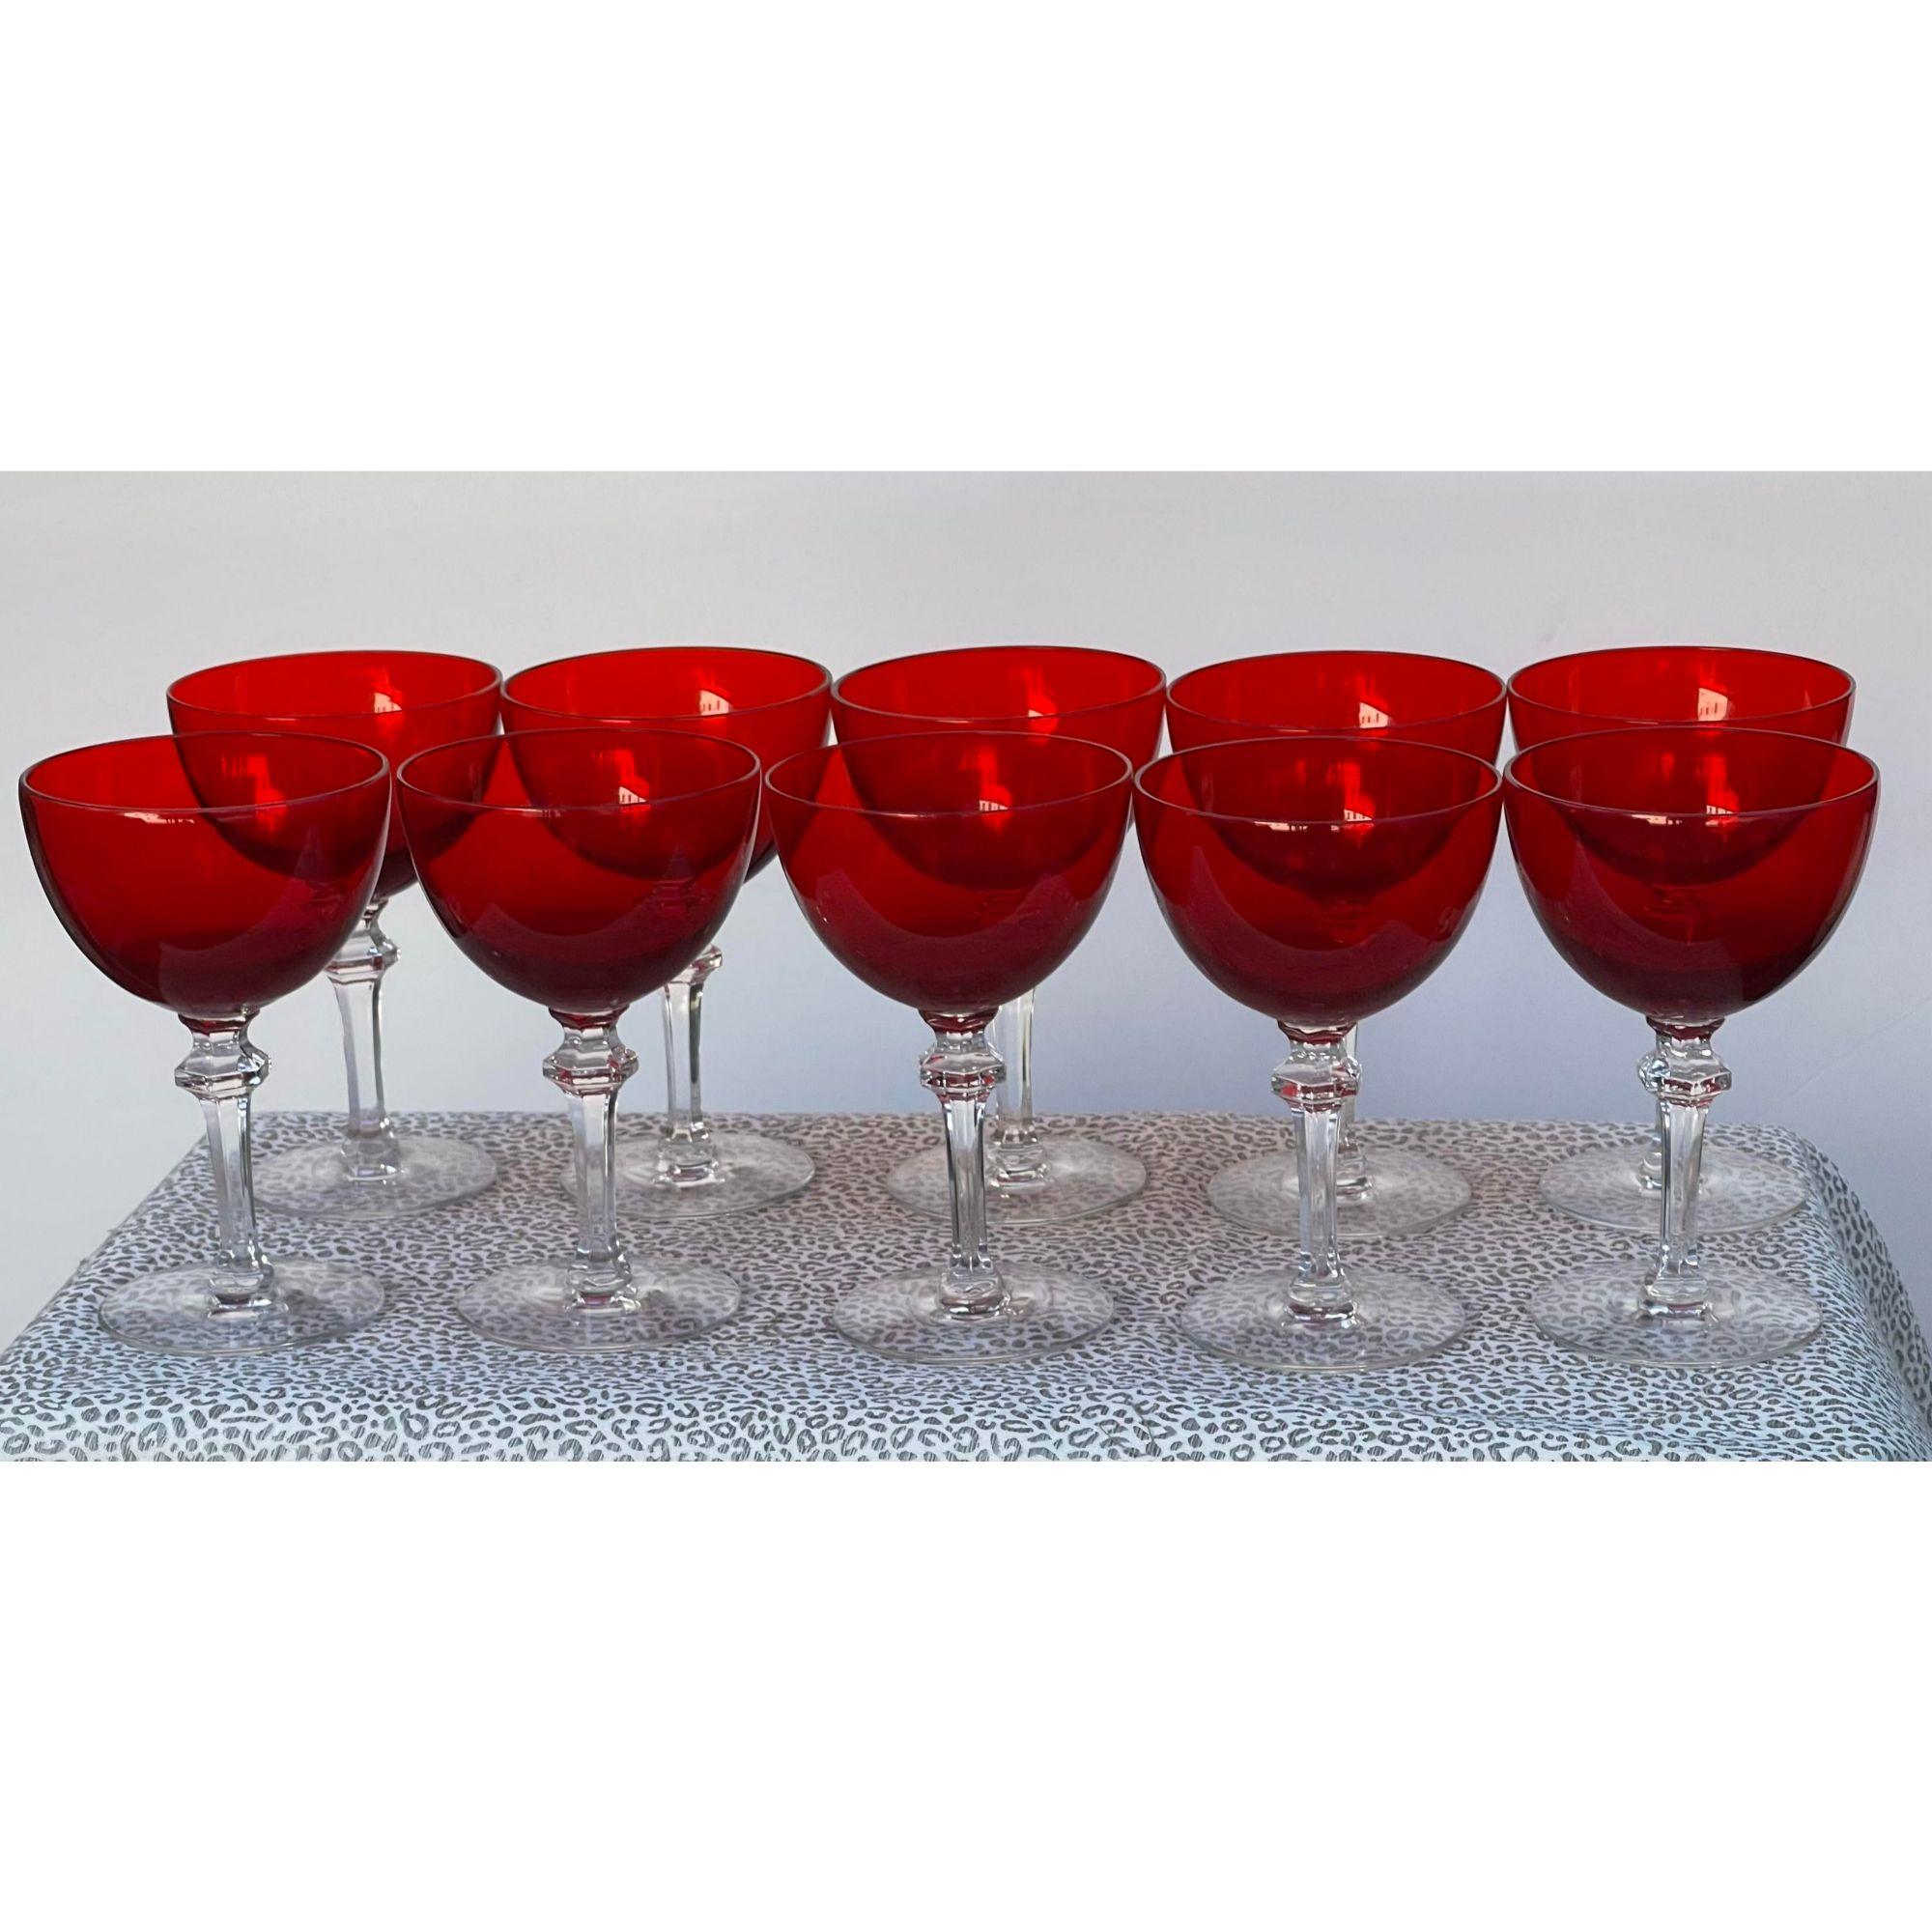 Antique Art Deco Morgantown Red Wine Glasses Champagne Stems - Set of 10

Informations complémentaires :
Matériaux : Verre
Couleur : Rouge
Marque : Morgantown Glass
Concepteur : Morgantown Glass
Période : 1930s
Styles : Art déco
Type d'article :